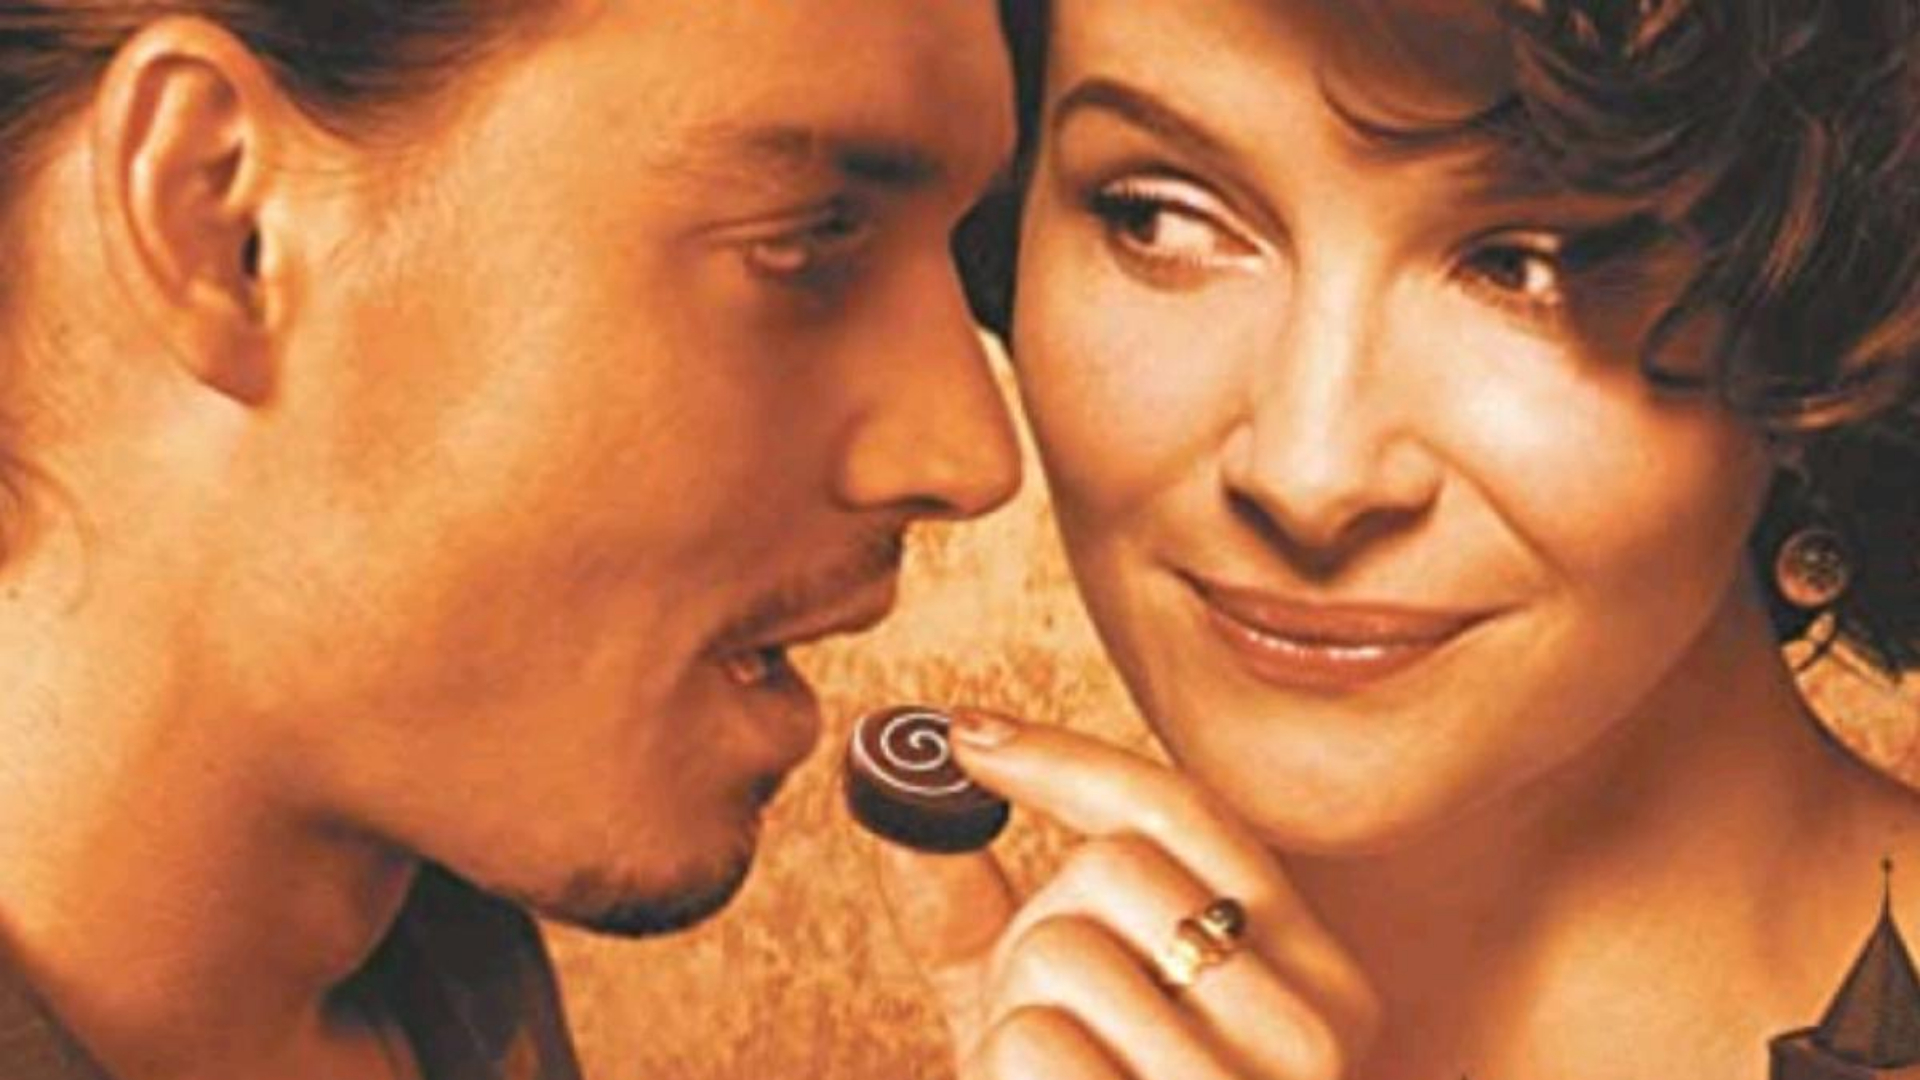 A Csokoládé című film plakátja Johnny Depp-pel és Juliette Binoche-sal